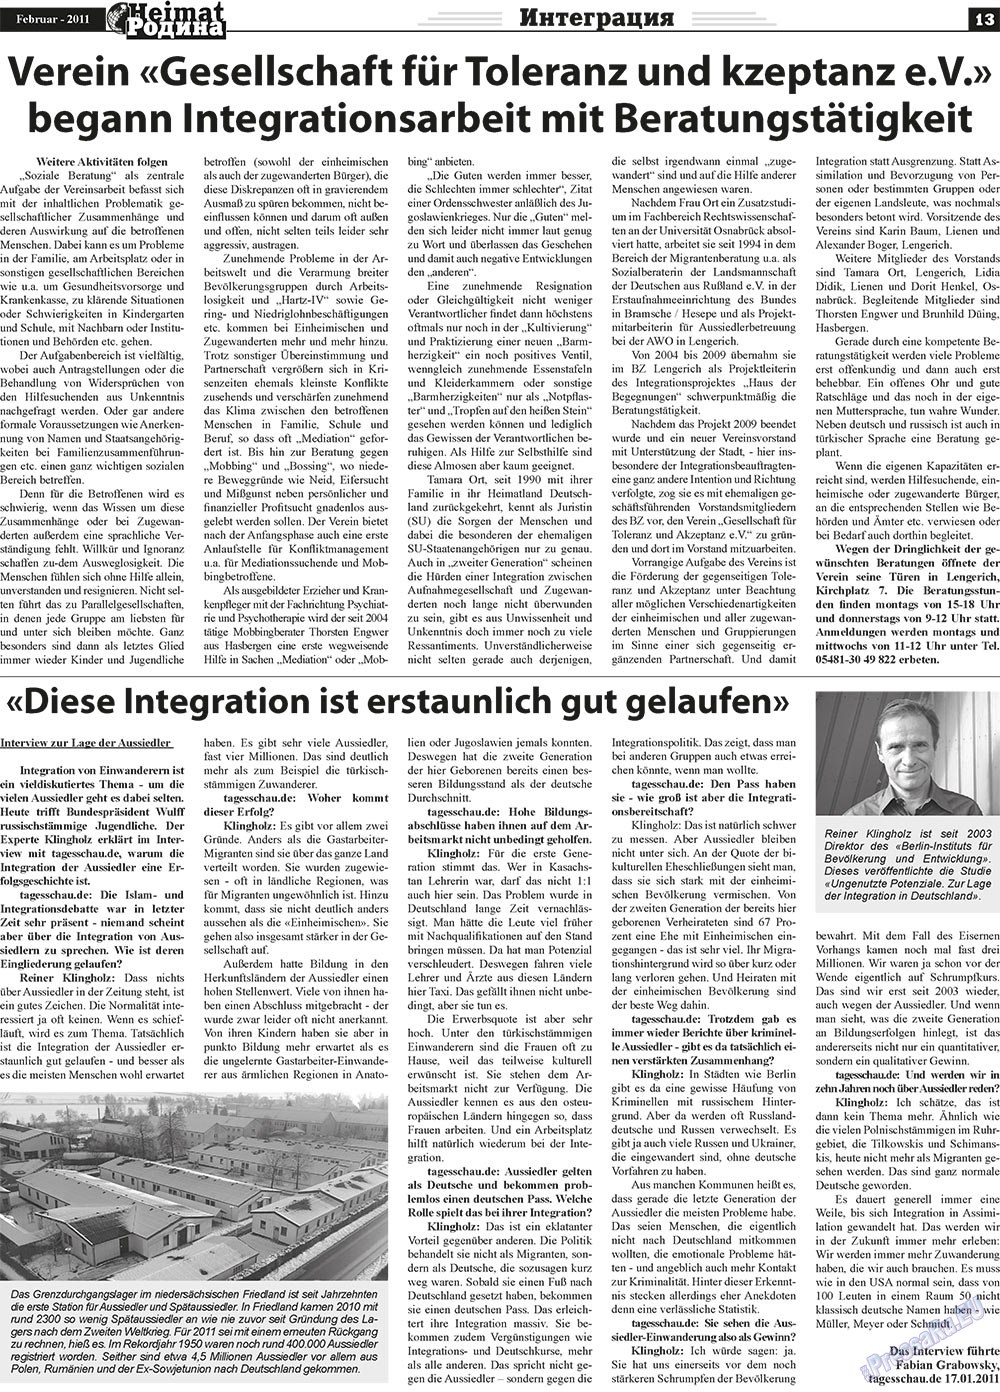 Heimat-Родина (газета). 2011 год, номер 2, стр. 13